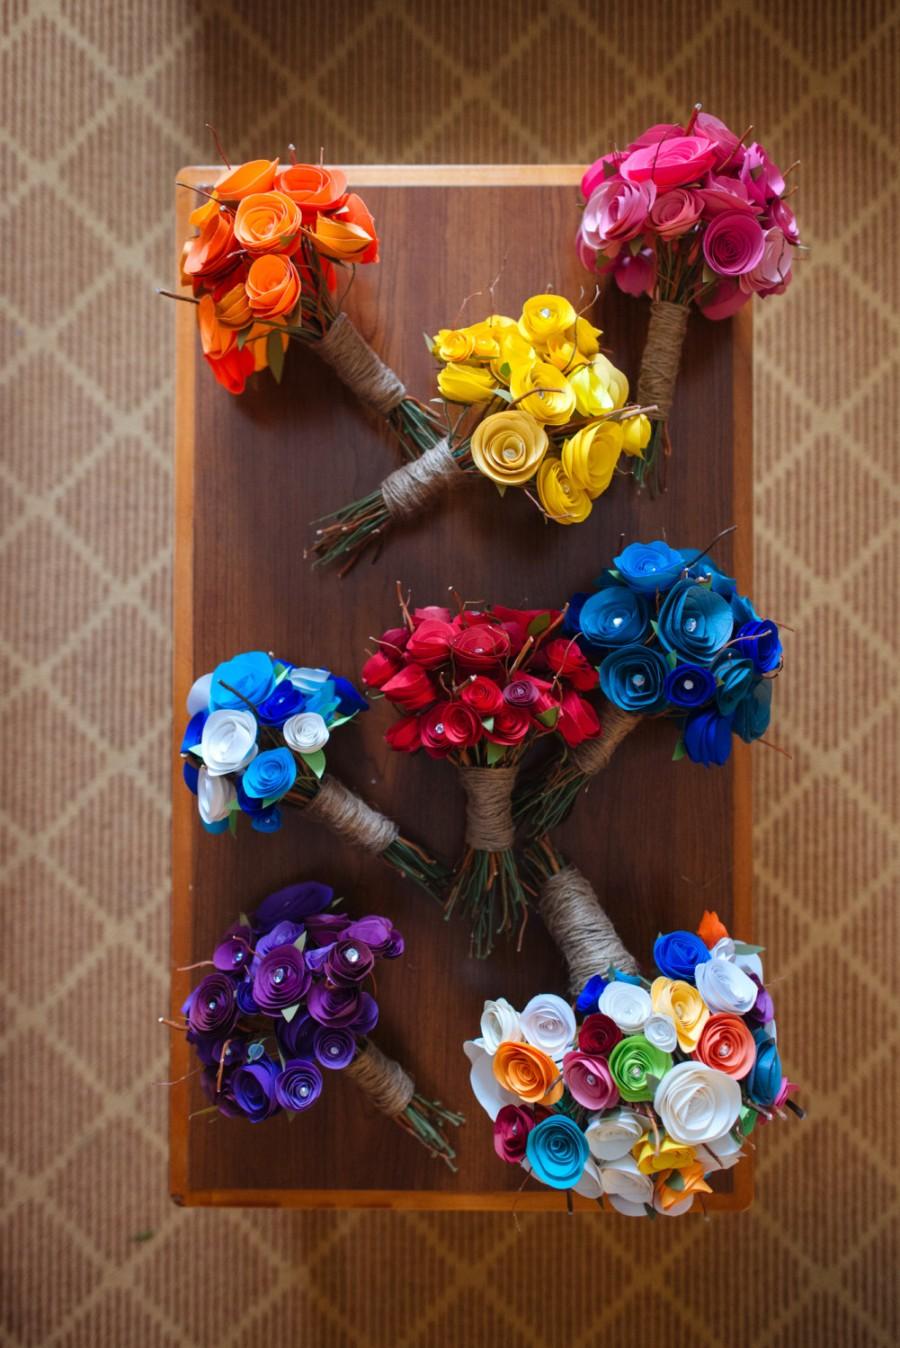 زفاف - ANY Color or rainbow Custom Made Paper roses. Flowers and rose Bouquet Home Decor, Gift for the Bride and Bridesmaids, Unique, Rustic Style